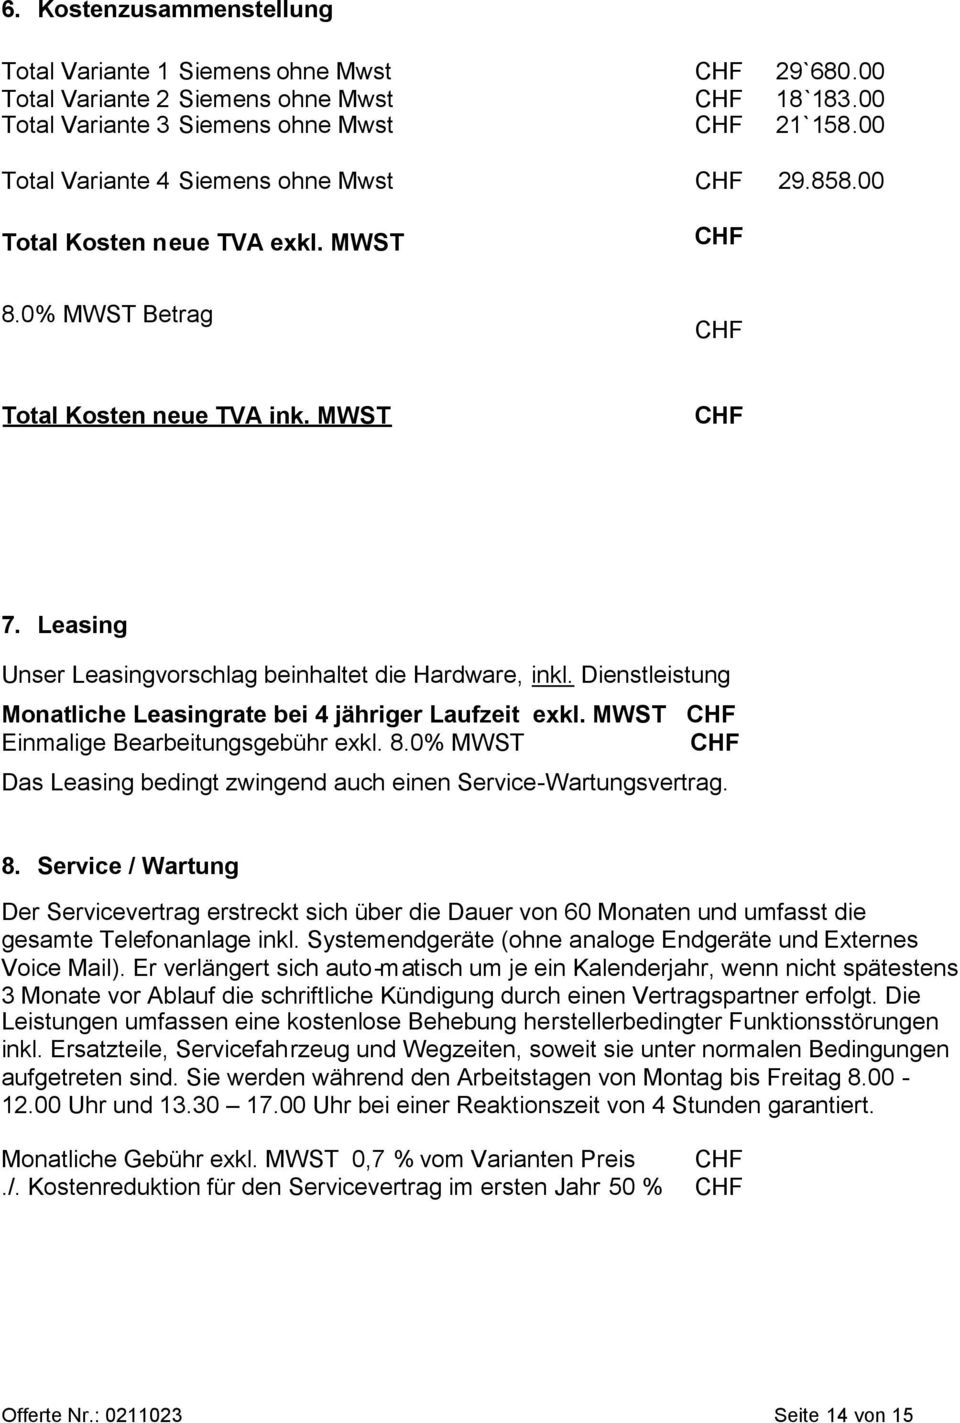 Dienstleistung Monatliche Leasingrate bei 4 jähriger Laufzeit exkl. MWST Einmalige Bearbeitungsgebühr exkl. 8.